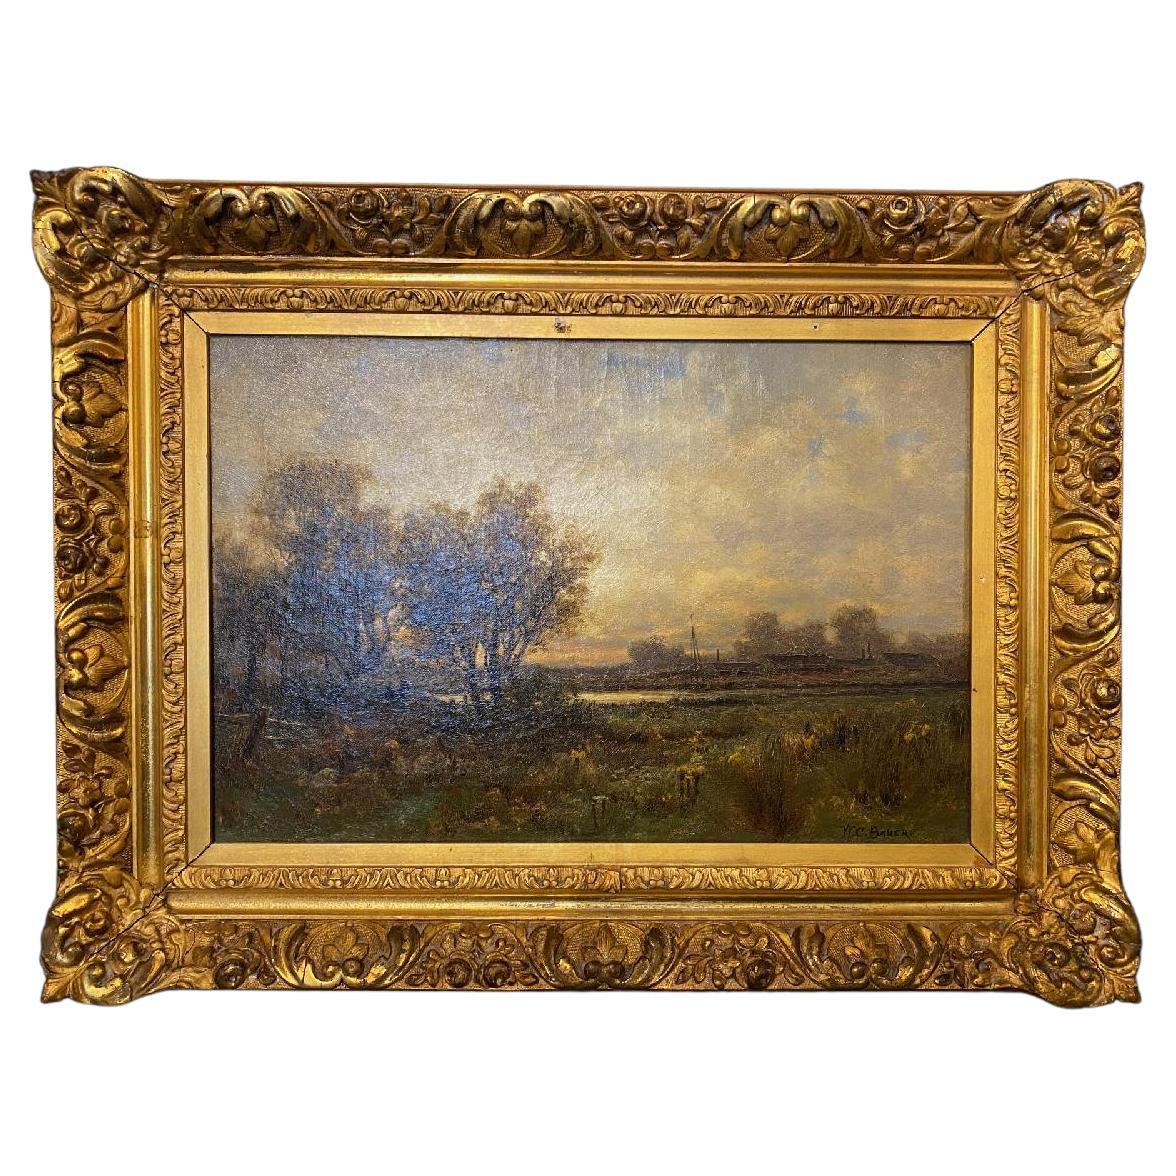 Huile sur toile américaine du 19e siècle représentant un paysage dans un cadre doré